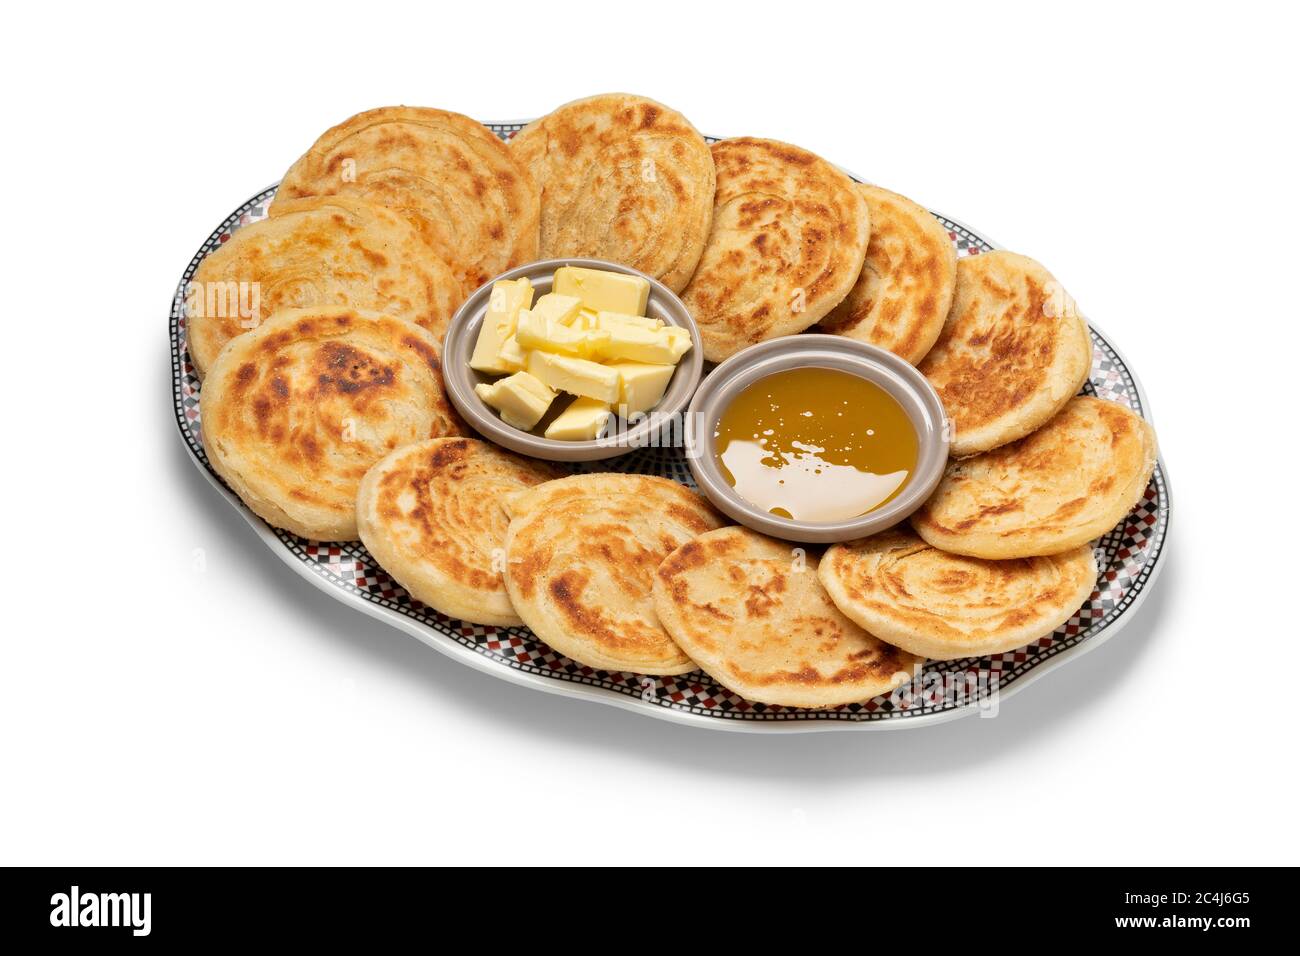 Meloui frais, crêpes marocaines au beurre et au miel sur une assiette isolée sur fond blanc Banque D'Images